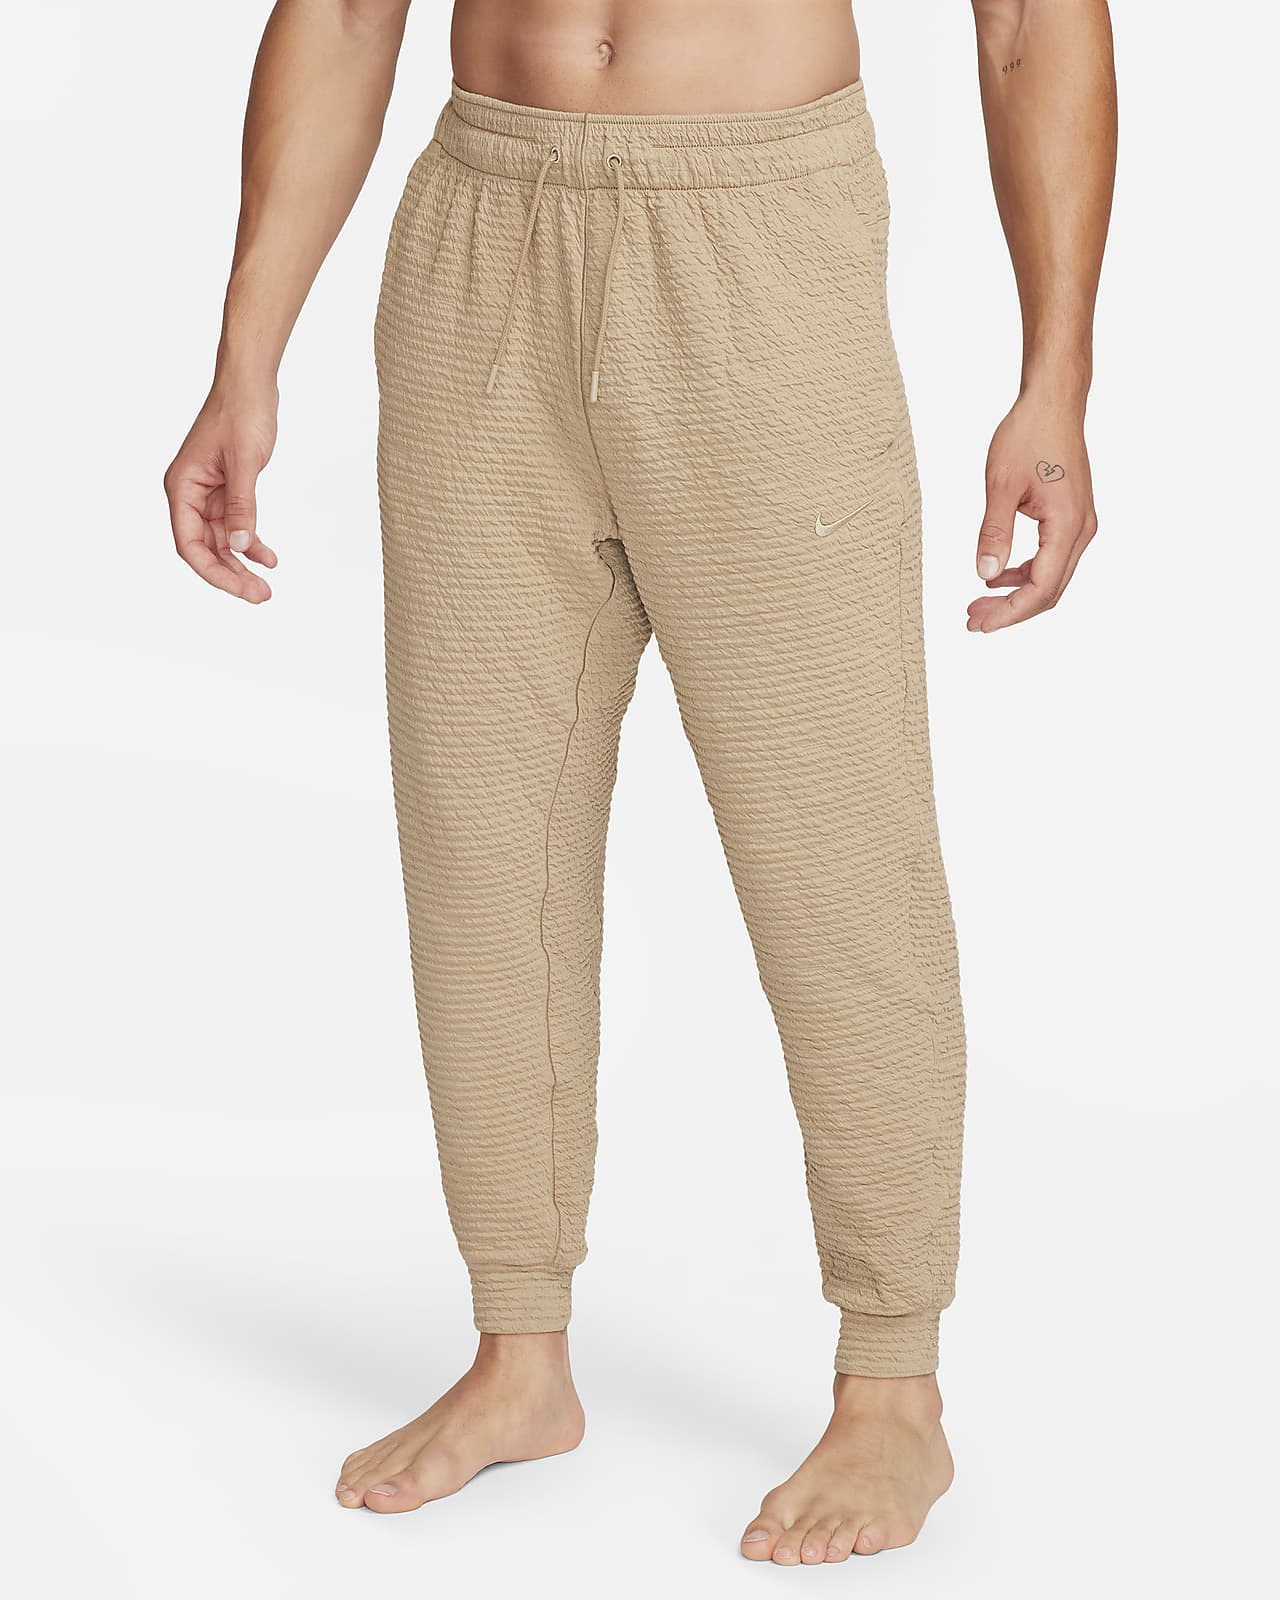 Pantalon de yoga Nike Dri-FIT pour Homme - CZ2208